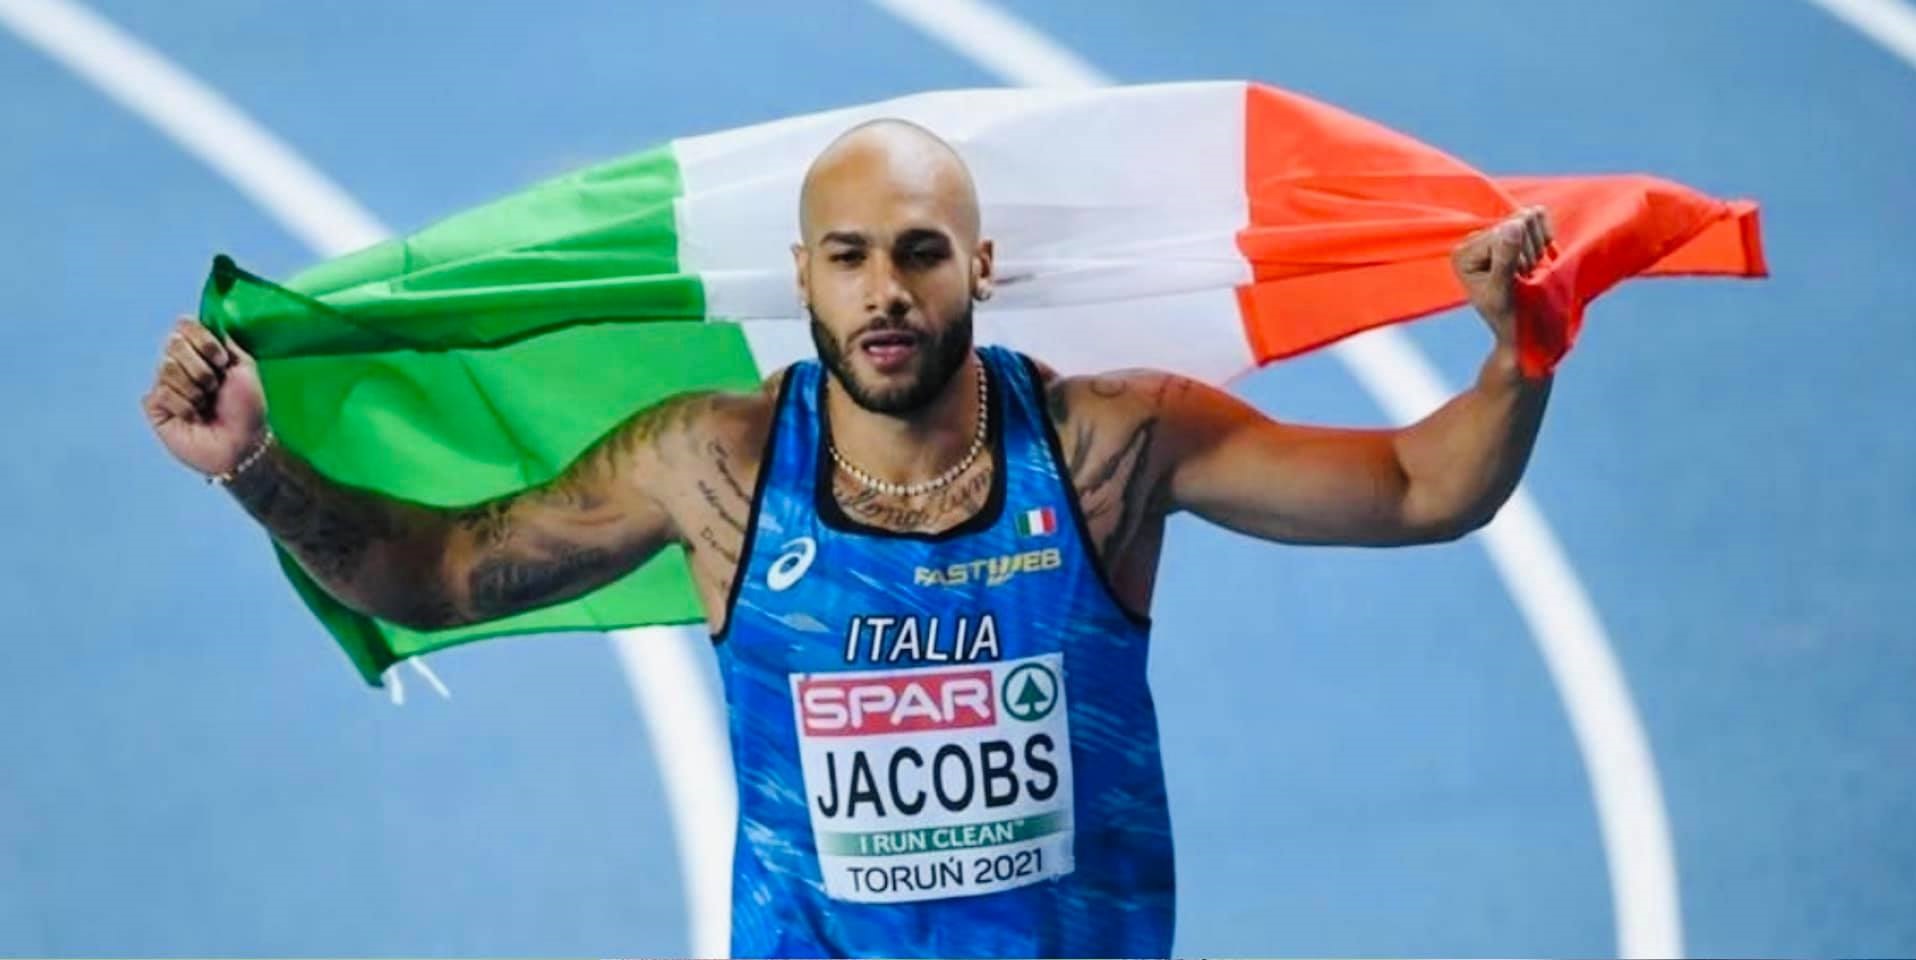 Atletica, il campione olimpico Jacobs al meeting di Savona un anno dopo il record